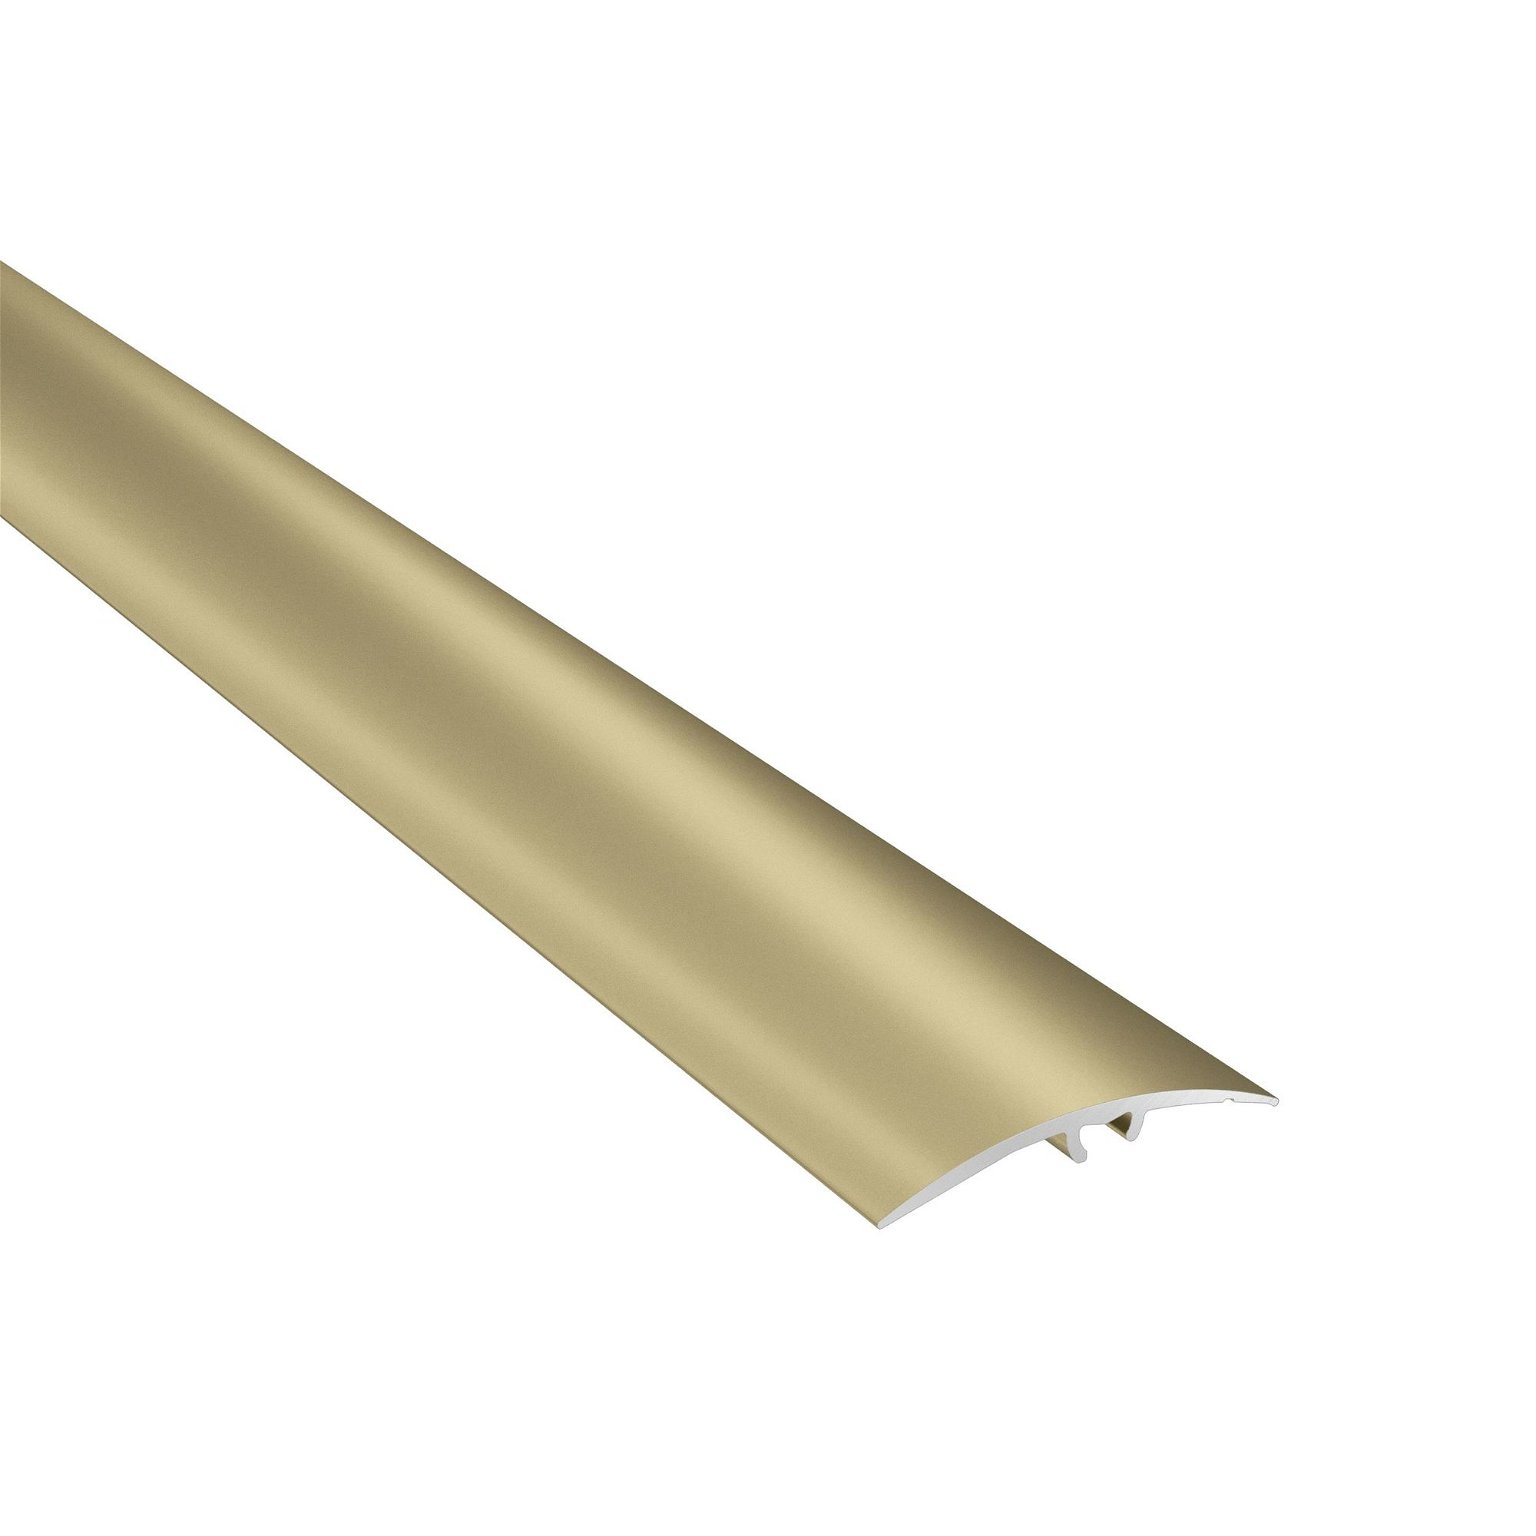 Aliumininė grindų juostelė SM2 A2, aukso sp., 41 mm pločio, 93 cm ilgio